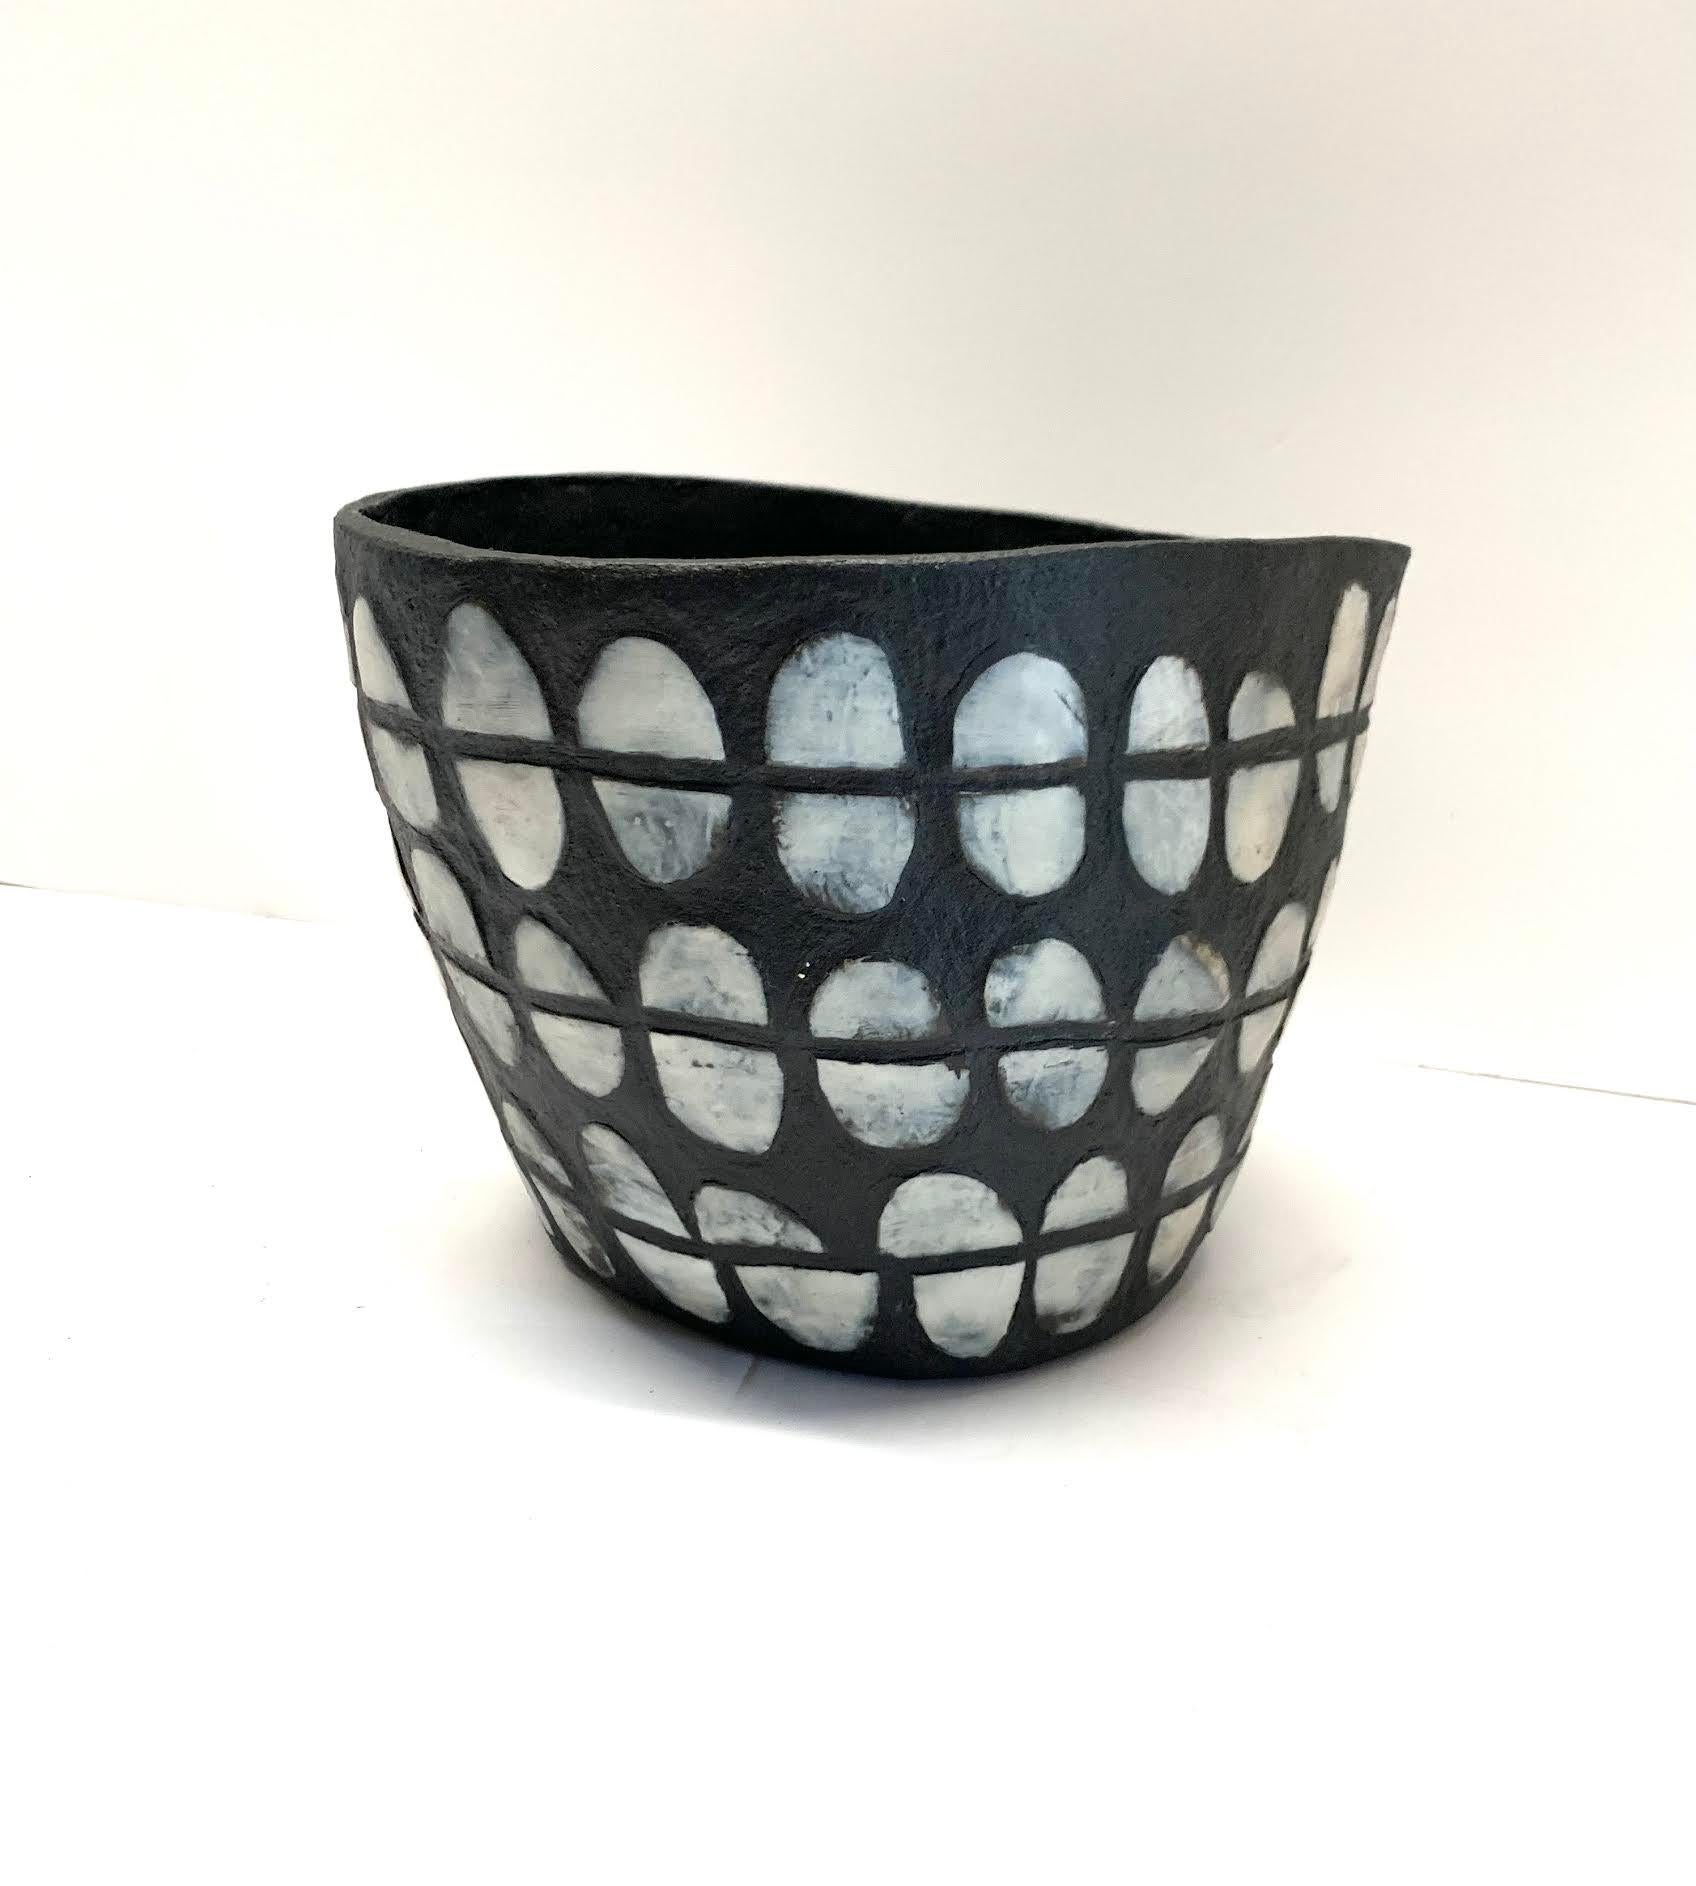 American Black & White Split Oval Design Ceramic Vase By Ceramicist Brenda Holzke, U.S.A.